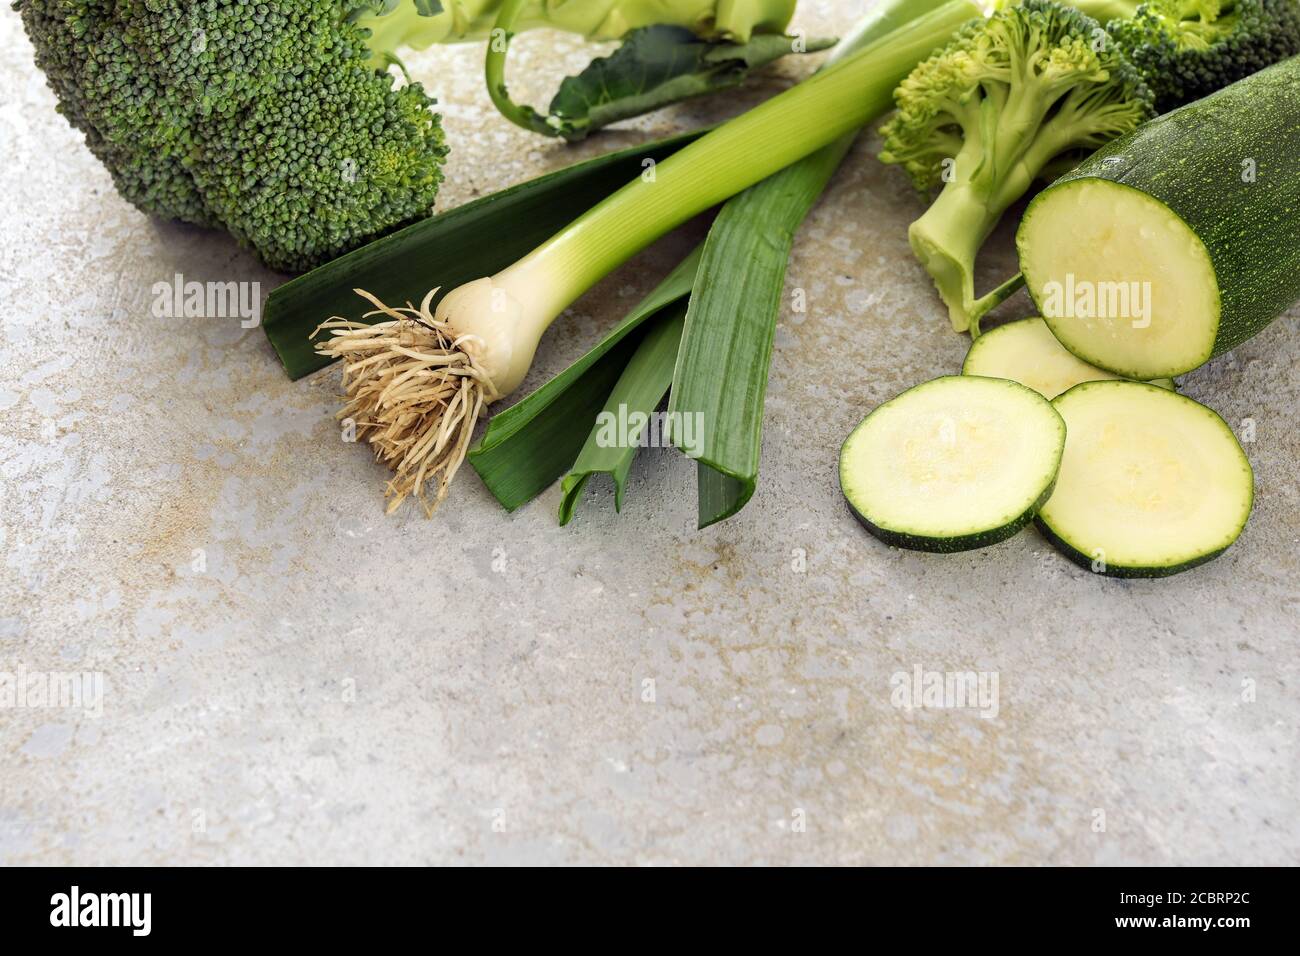 Verdure verdi sane come zucchine, porri e broccoli su uno sfondo grigio con spazio di copia, fuoco selezionato, profondità di campo stretta Foto Stock